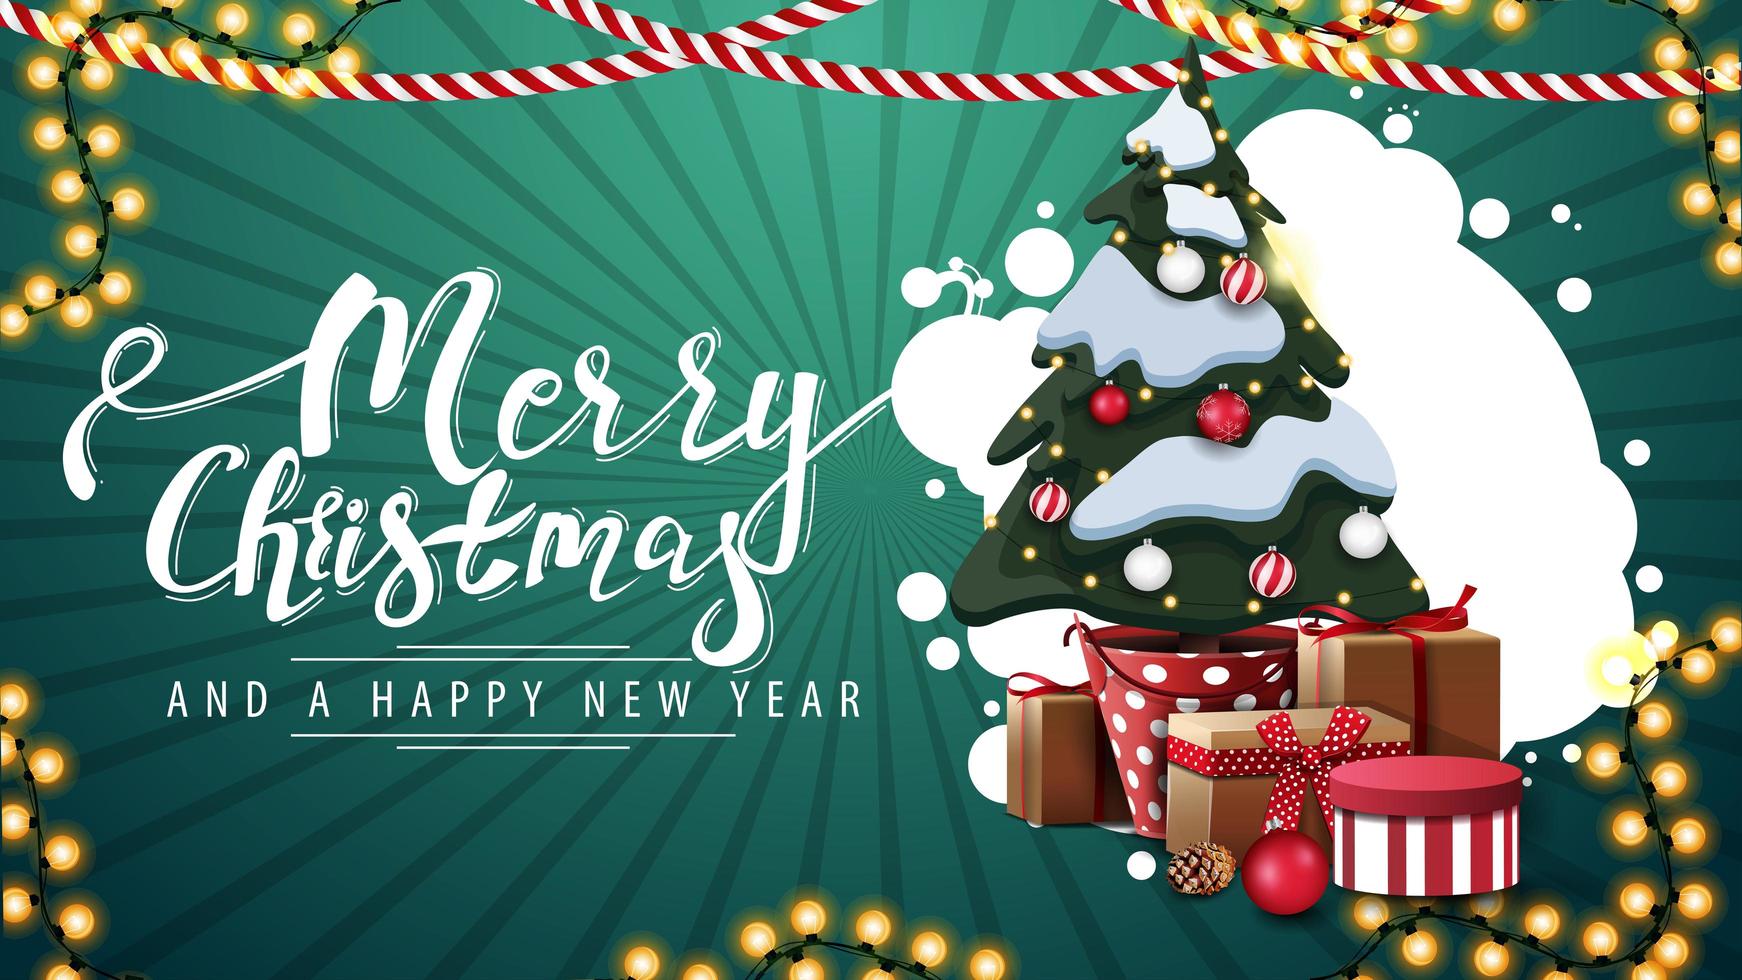 Joyeux Noël et bonne année, carte postale verte avec nuage abstrait de cercles, guirlandes et arbre de Noël dans un pot avec des cadeaux vecteur